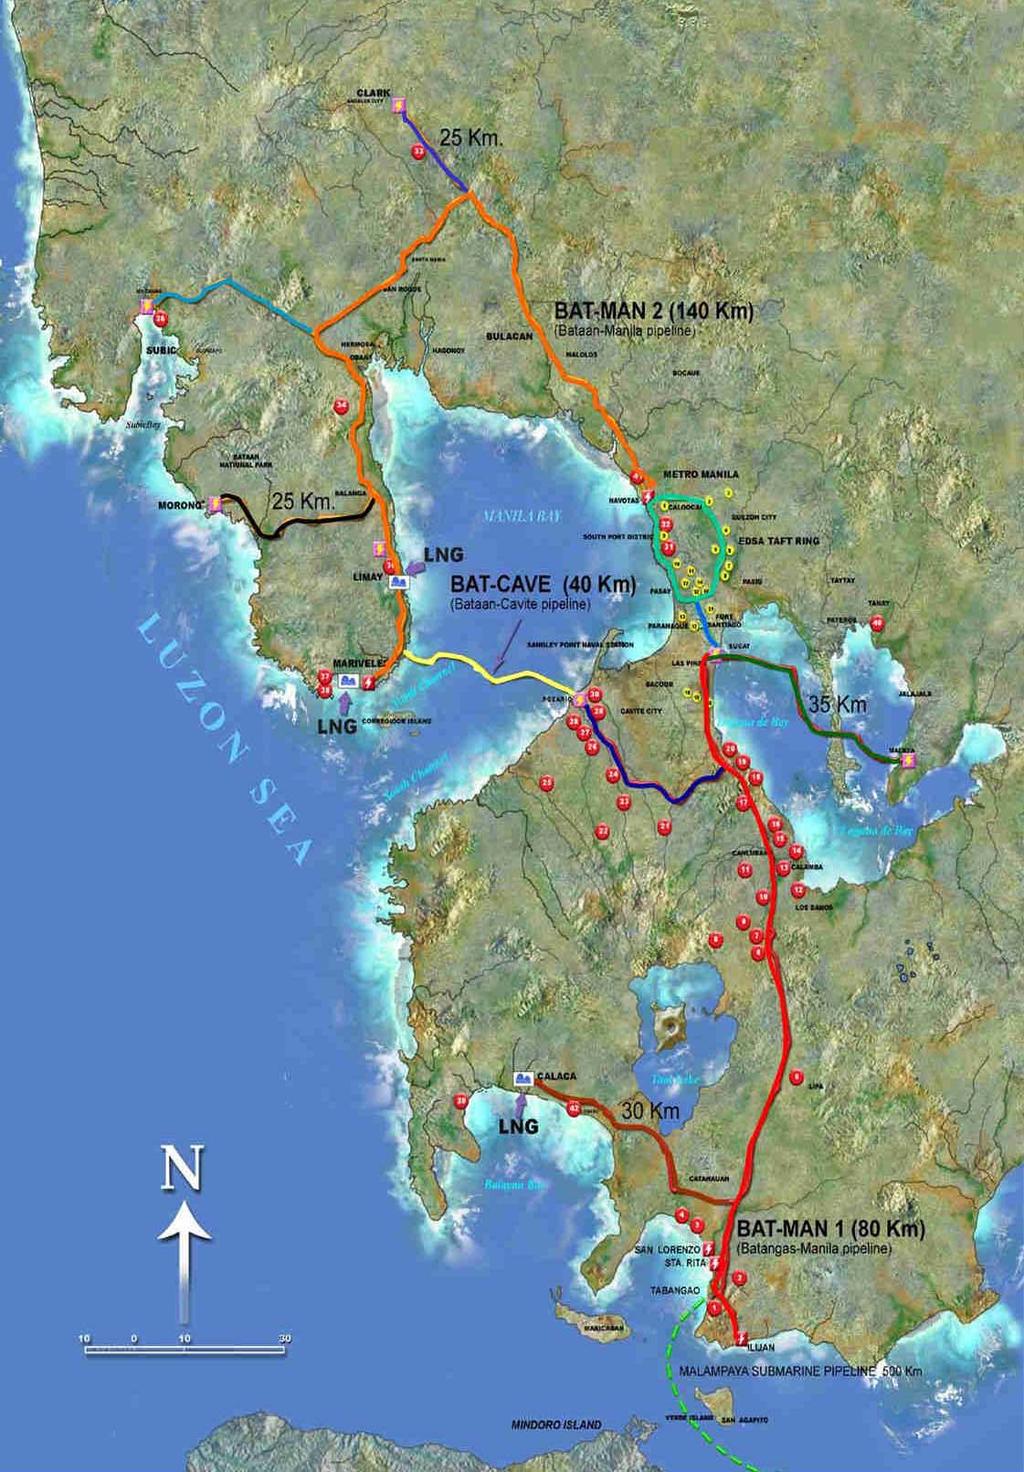 DOWNSTREAM NATURAL GAS Transmission Pipelines in Luzon BATMAN 2 (Bataan - Manila) 140 kms. ET LOOP (EDSA Taft Loop) 40 kms.